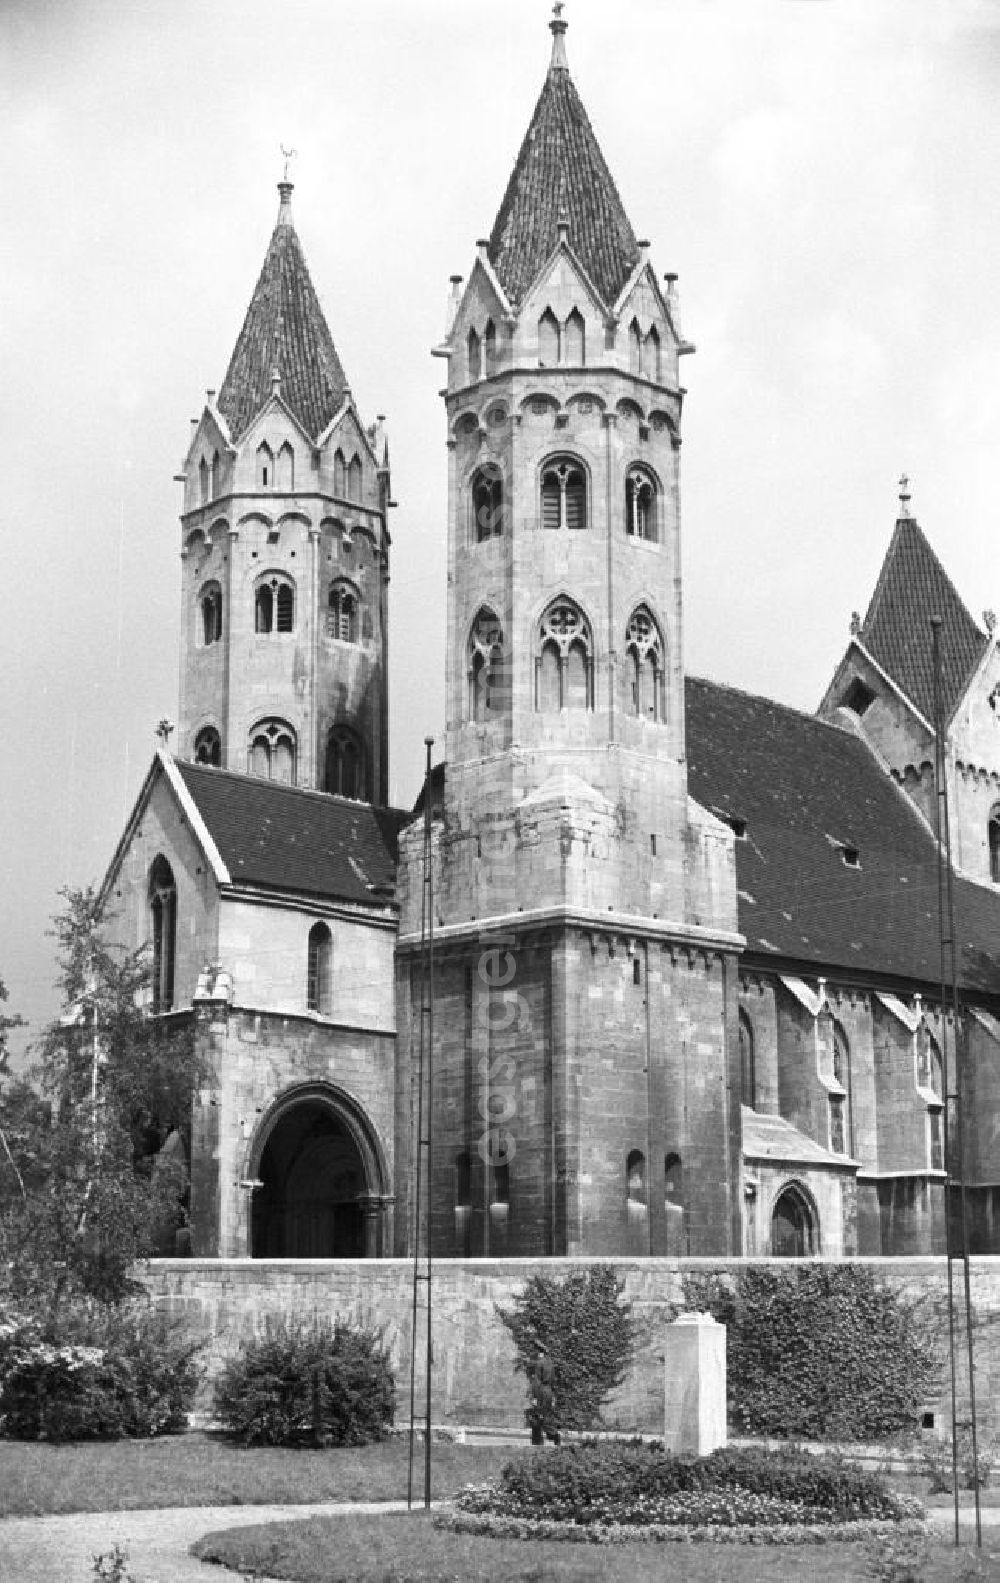 GDR photo archive: Freyburg - Blick auf die Stadtkirche St. Marien in Freyburg an der Unstrut. Freyburg gehörte zu den bedeutendsten Weinanbaugebieten in der DDR. An den Kalkhängen im Unstrut-Tal gediehen der Müller-Thurgau, der Traminer und andere Weinsorten. Den größten Bekanntheits- und Beliebtheitsgrad hatte in der DDR jedoch der Rotkäppchen-Sekt, dessen Herstellung in Freyburg auf eine lange Tradition zurückblicken kann.